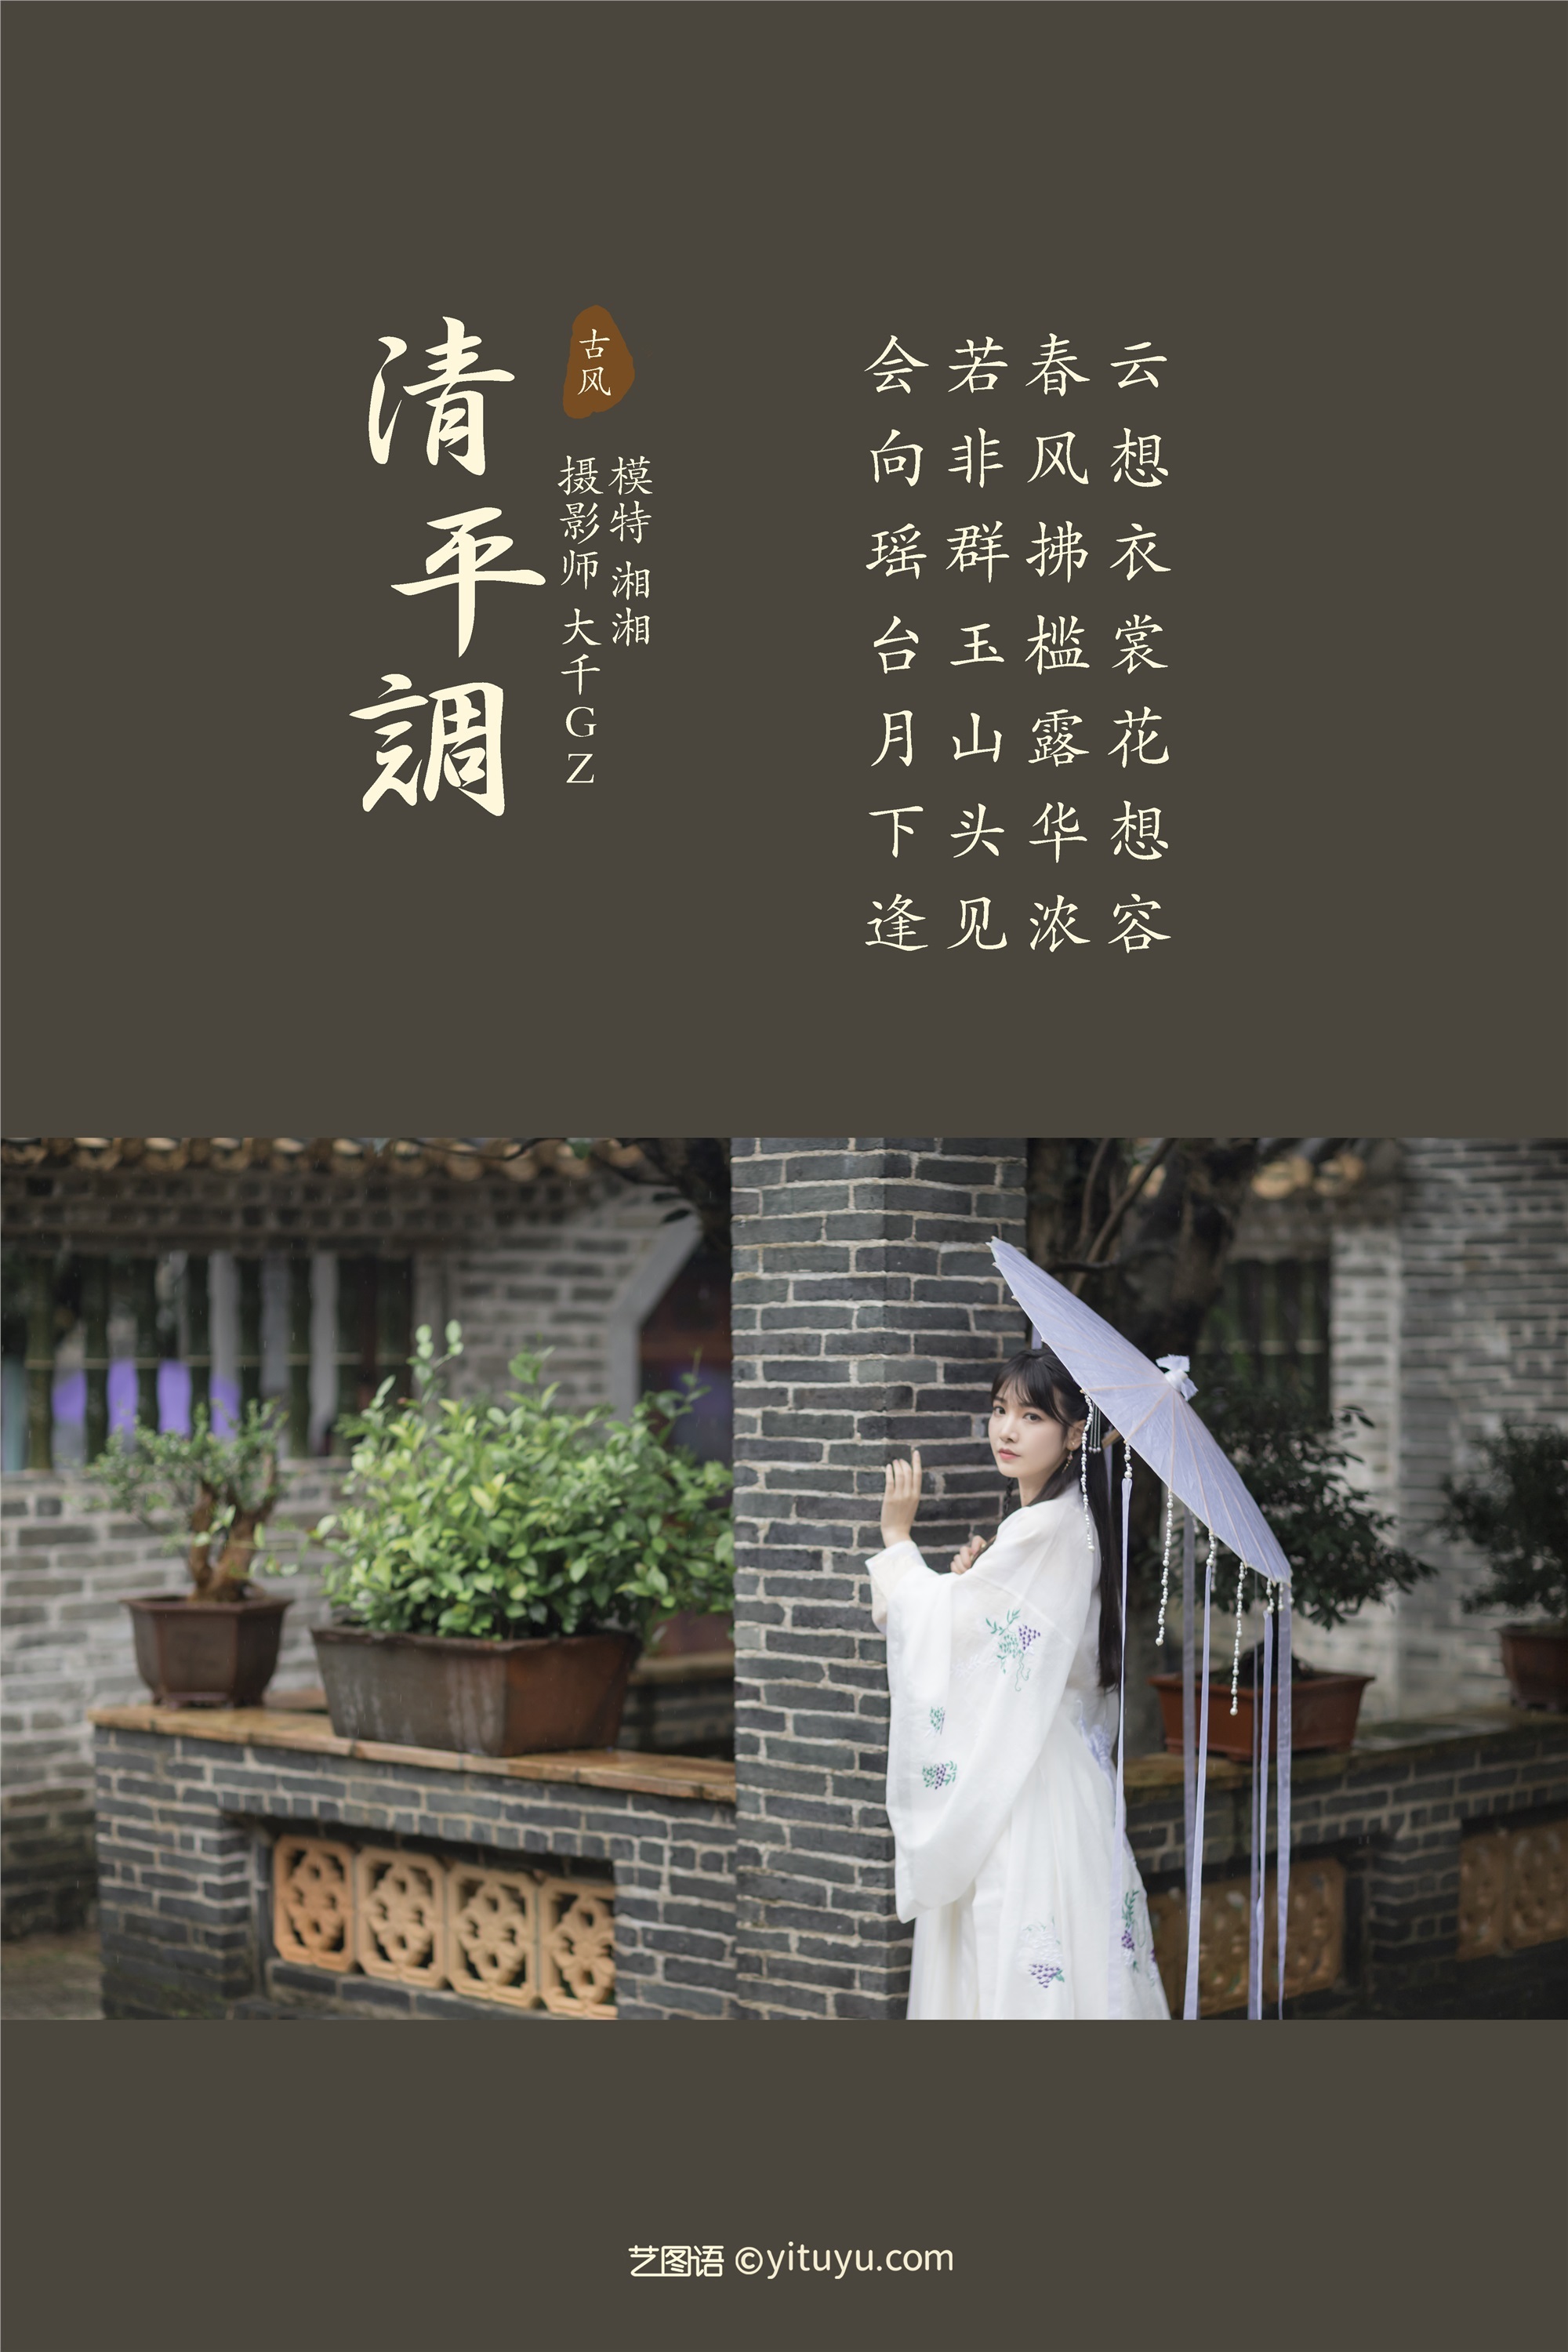 YITUYU Art Picture Language 2021.09.06 Qing Ping Diao Xiang Xiang